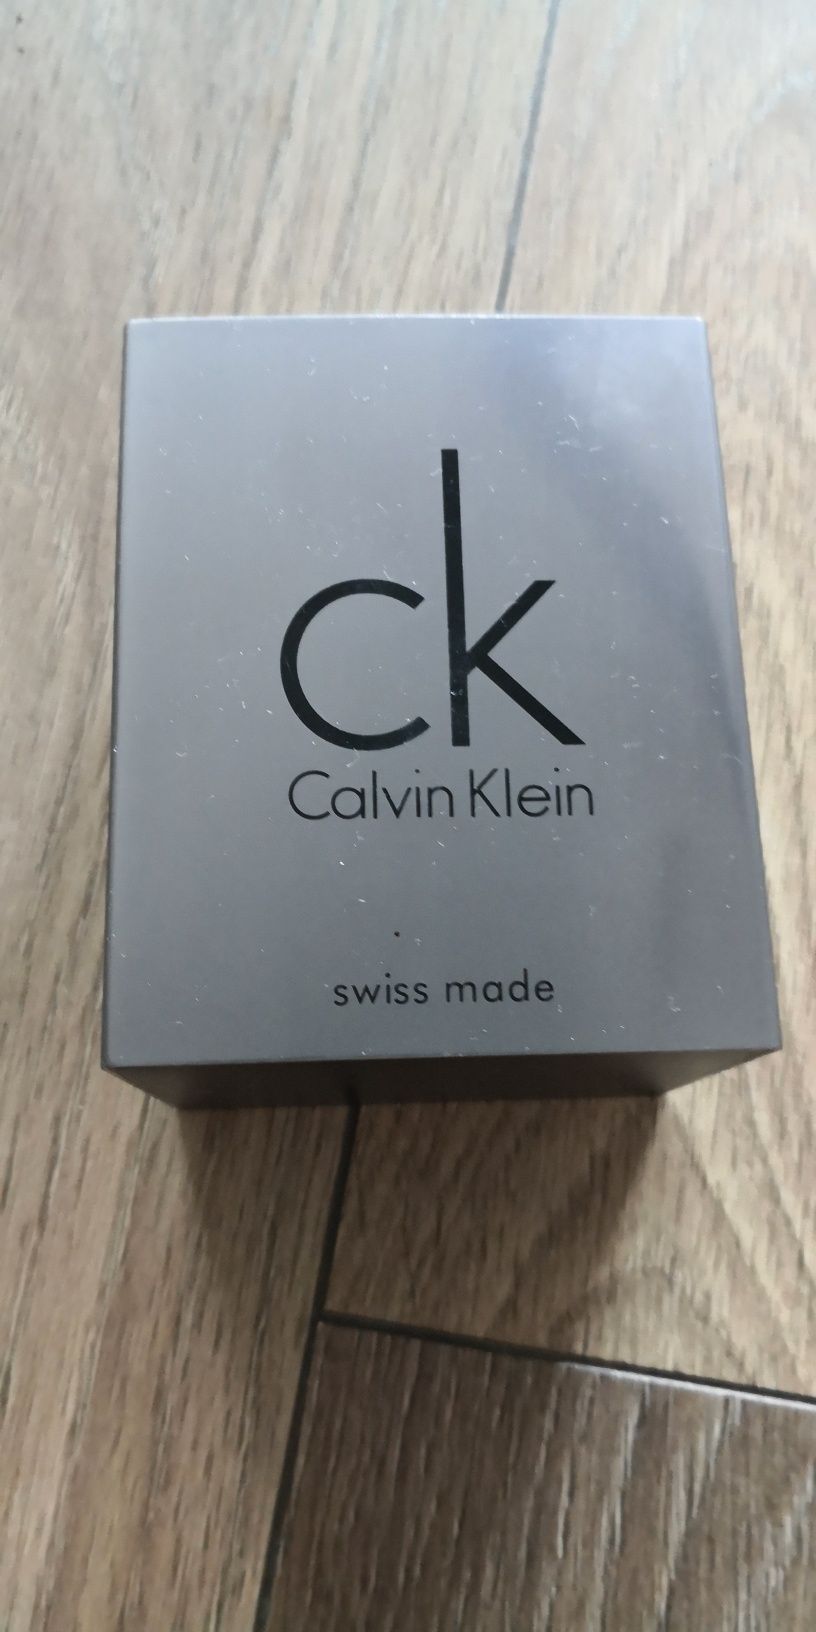 Zegarek Calvin Klein